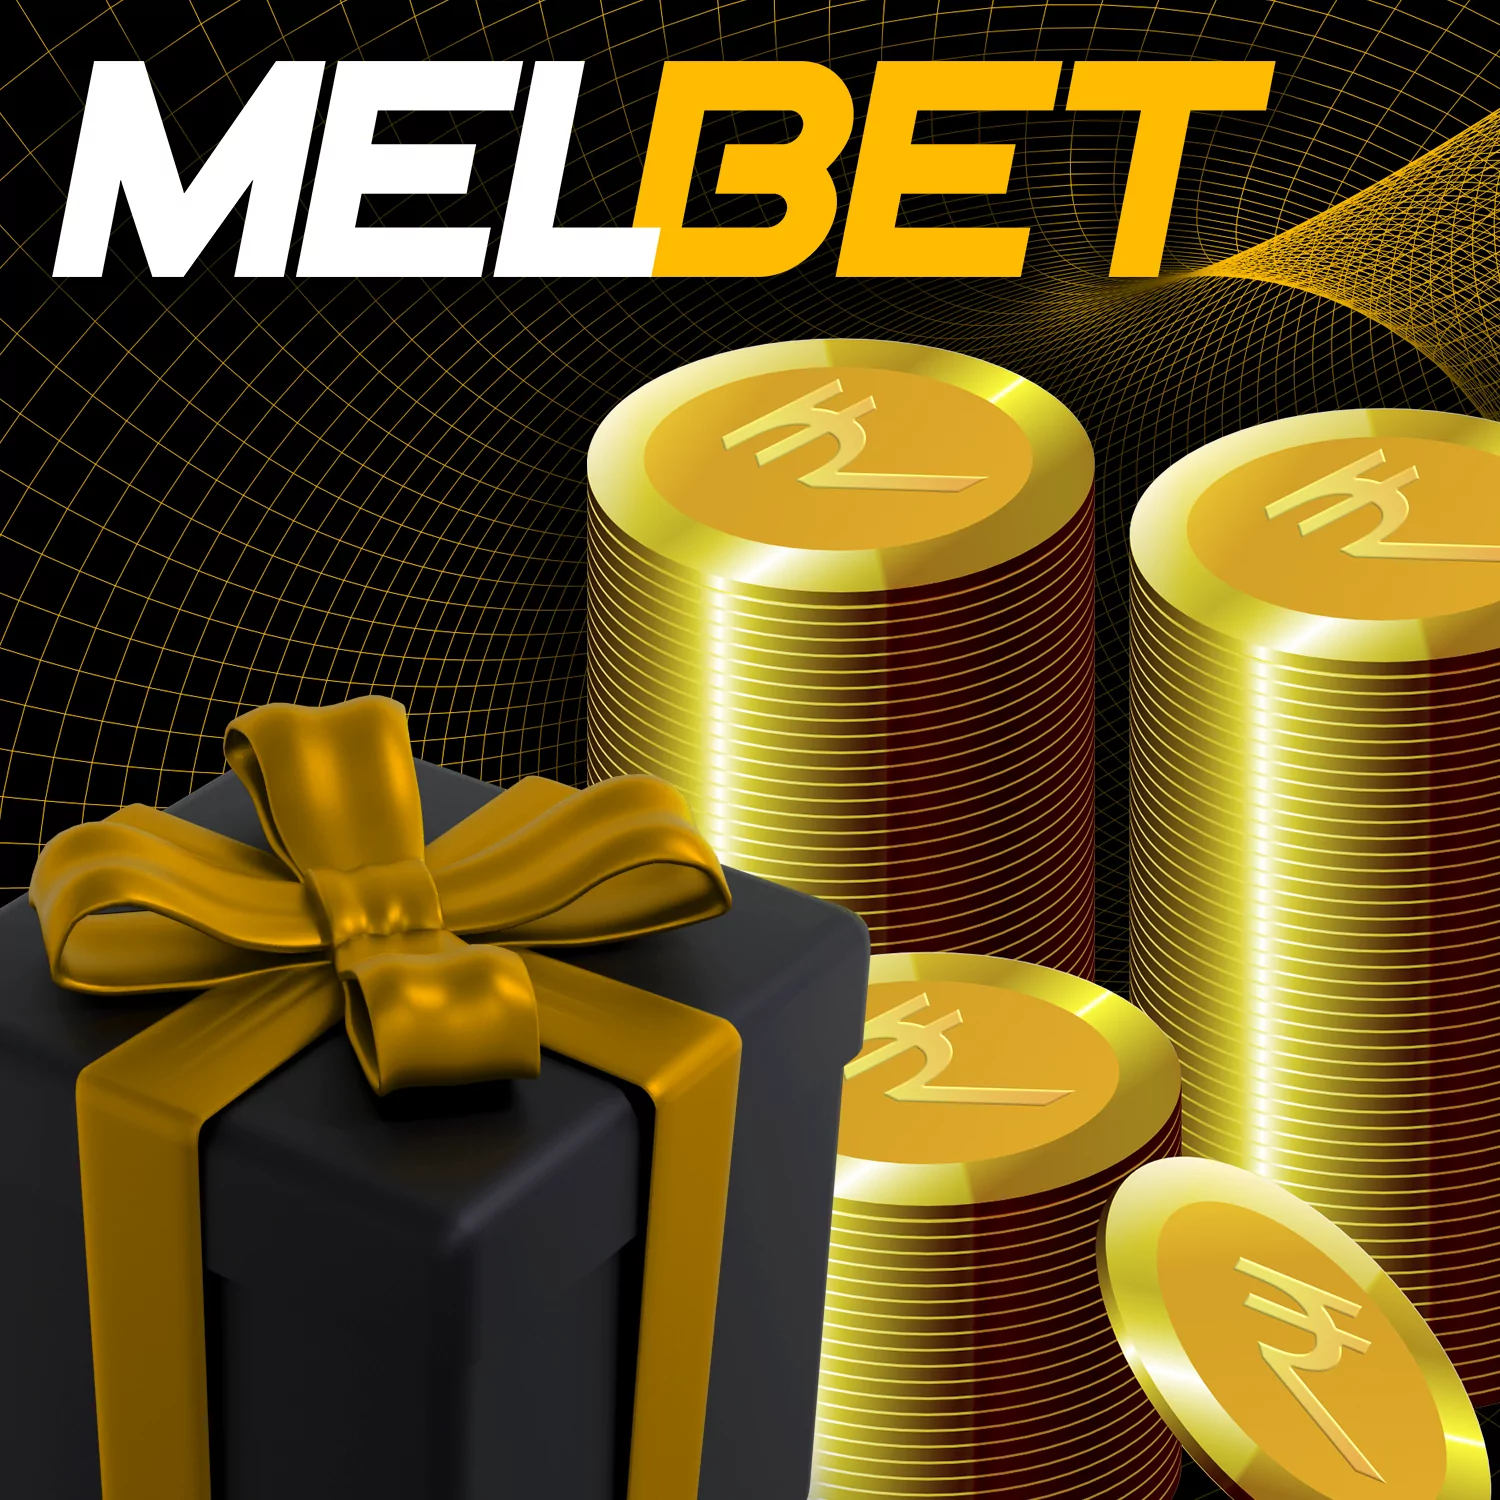 Melbet भारतीय खिलाड़ियों के लिए कई बोनस और प्रचार प्रदान करता है।